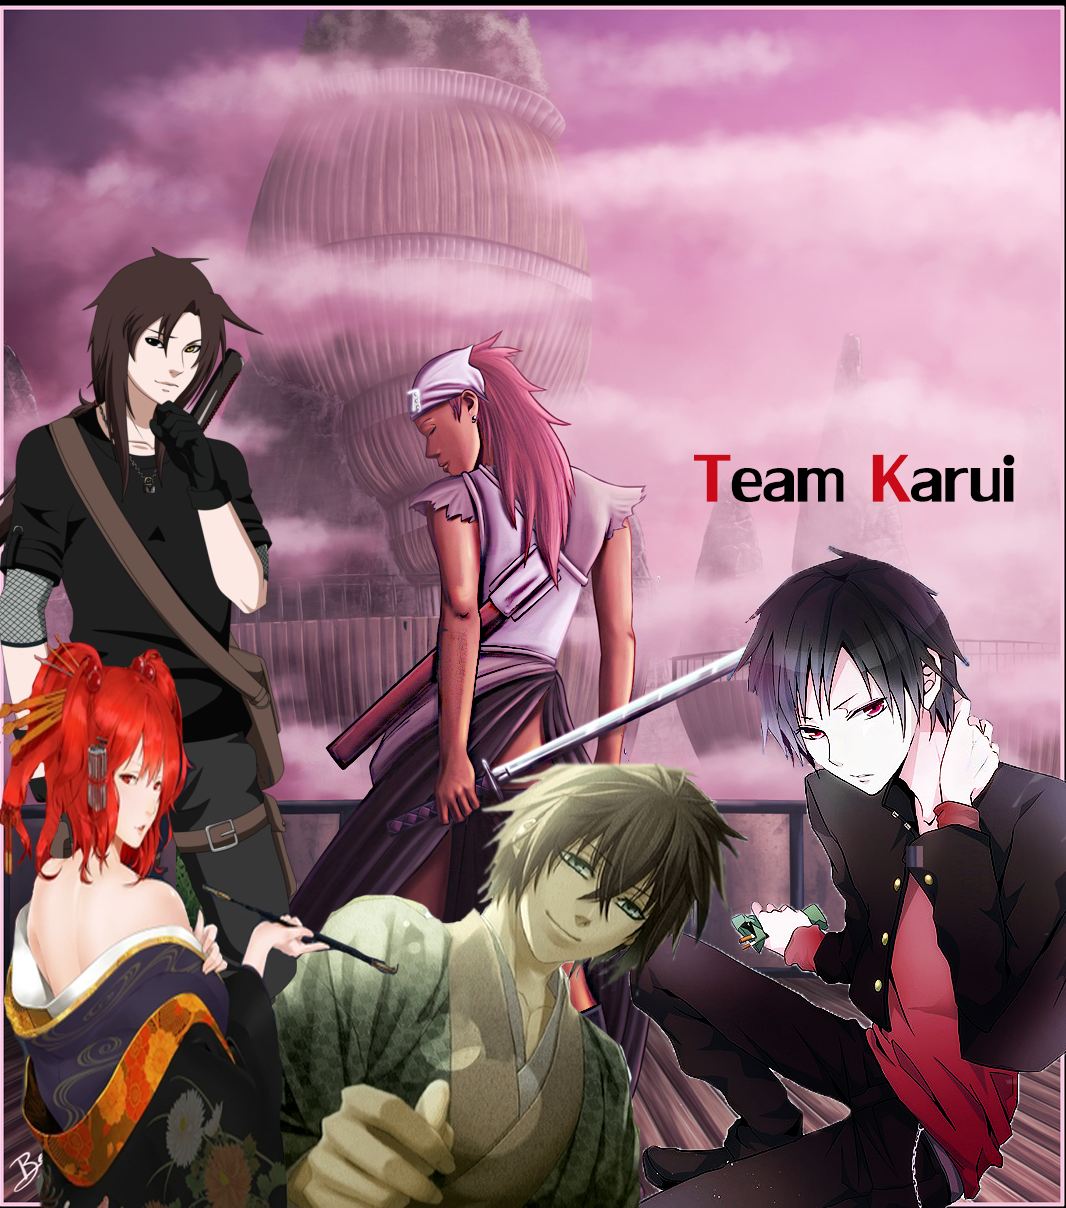 Team Karui | Naruto Fanon Wiki | FANDOM powered by Wikia
